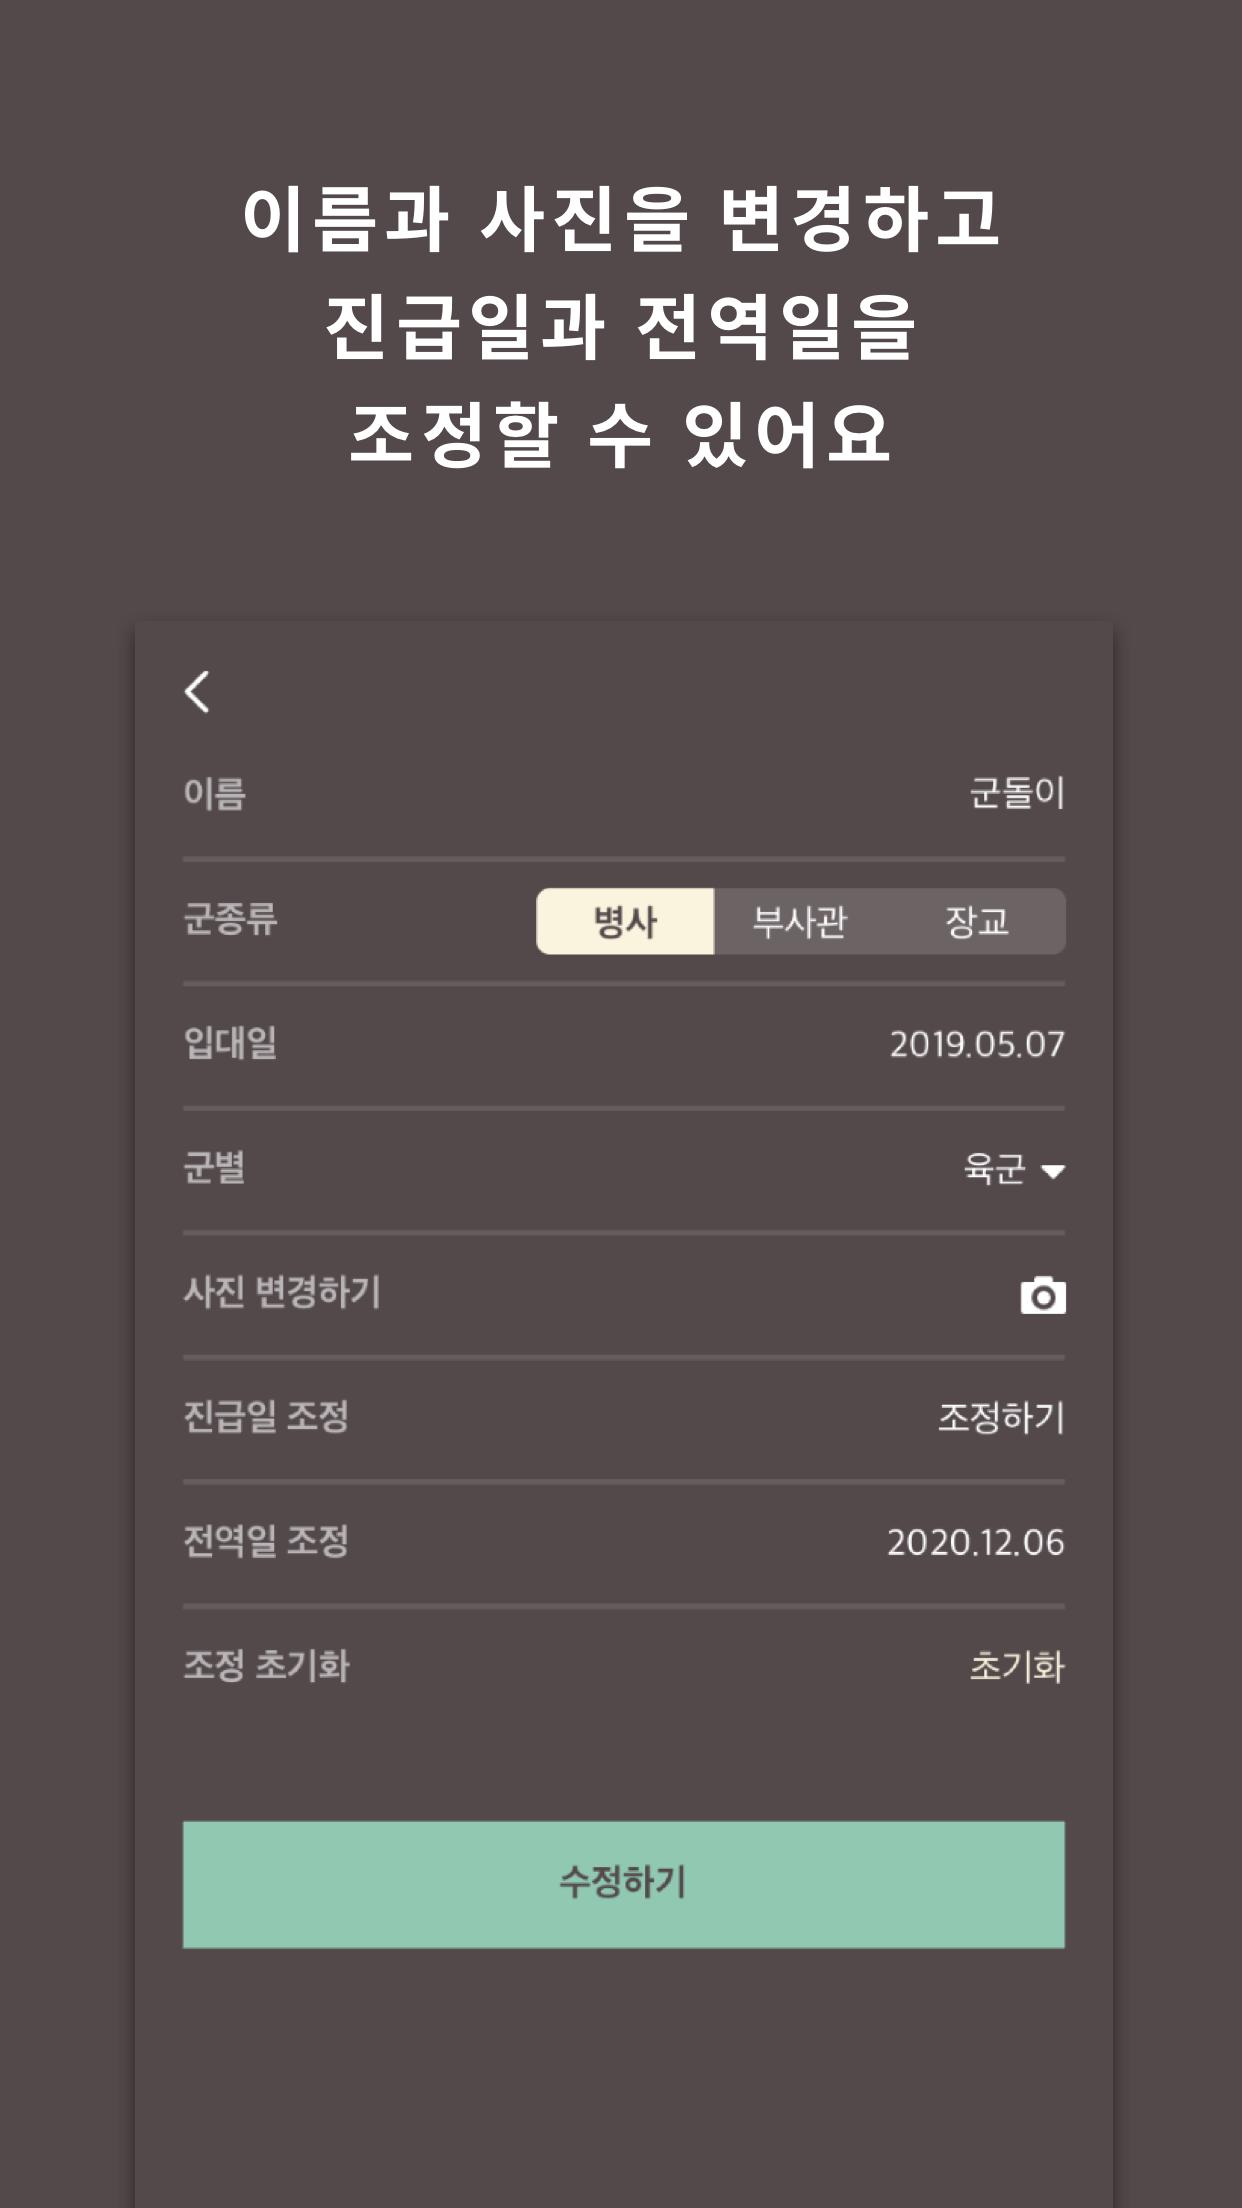 군돌이 - 국민 전역일계산기 앱 Goondori 군대 군인